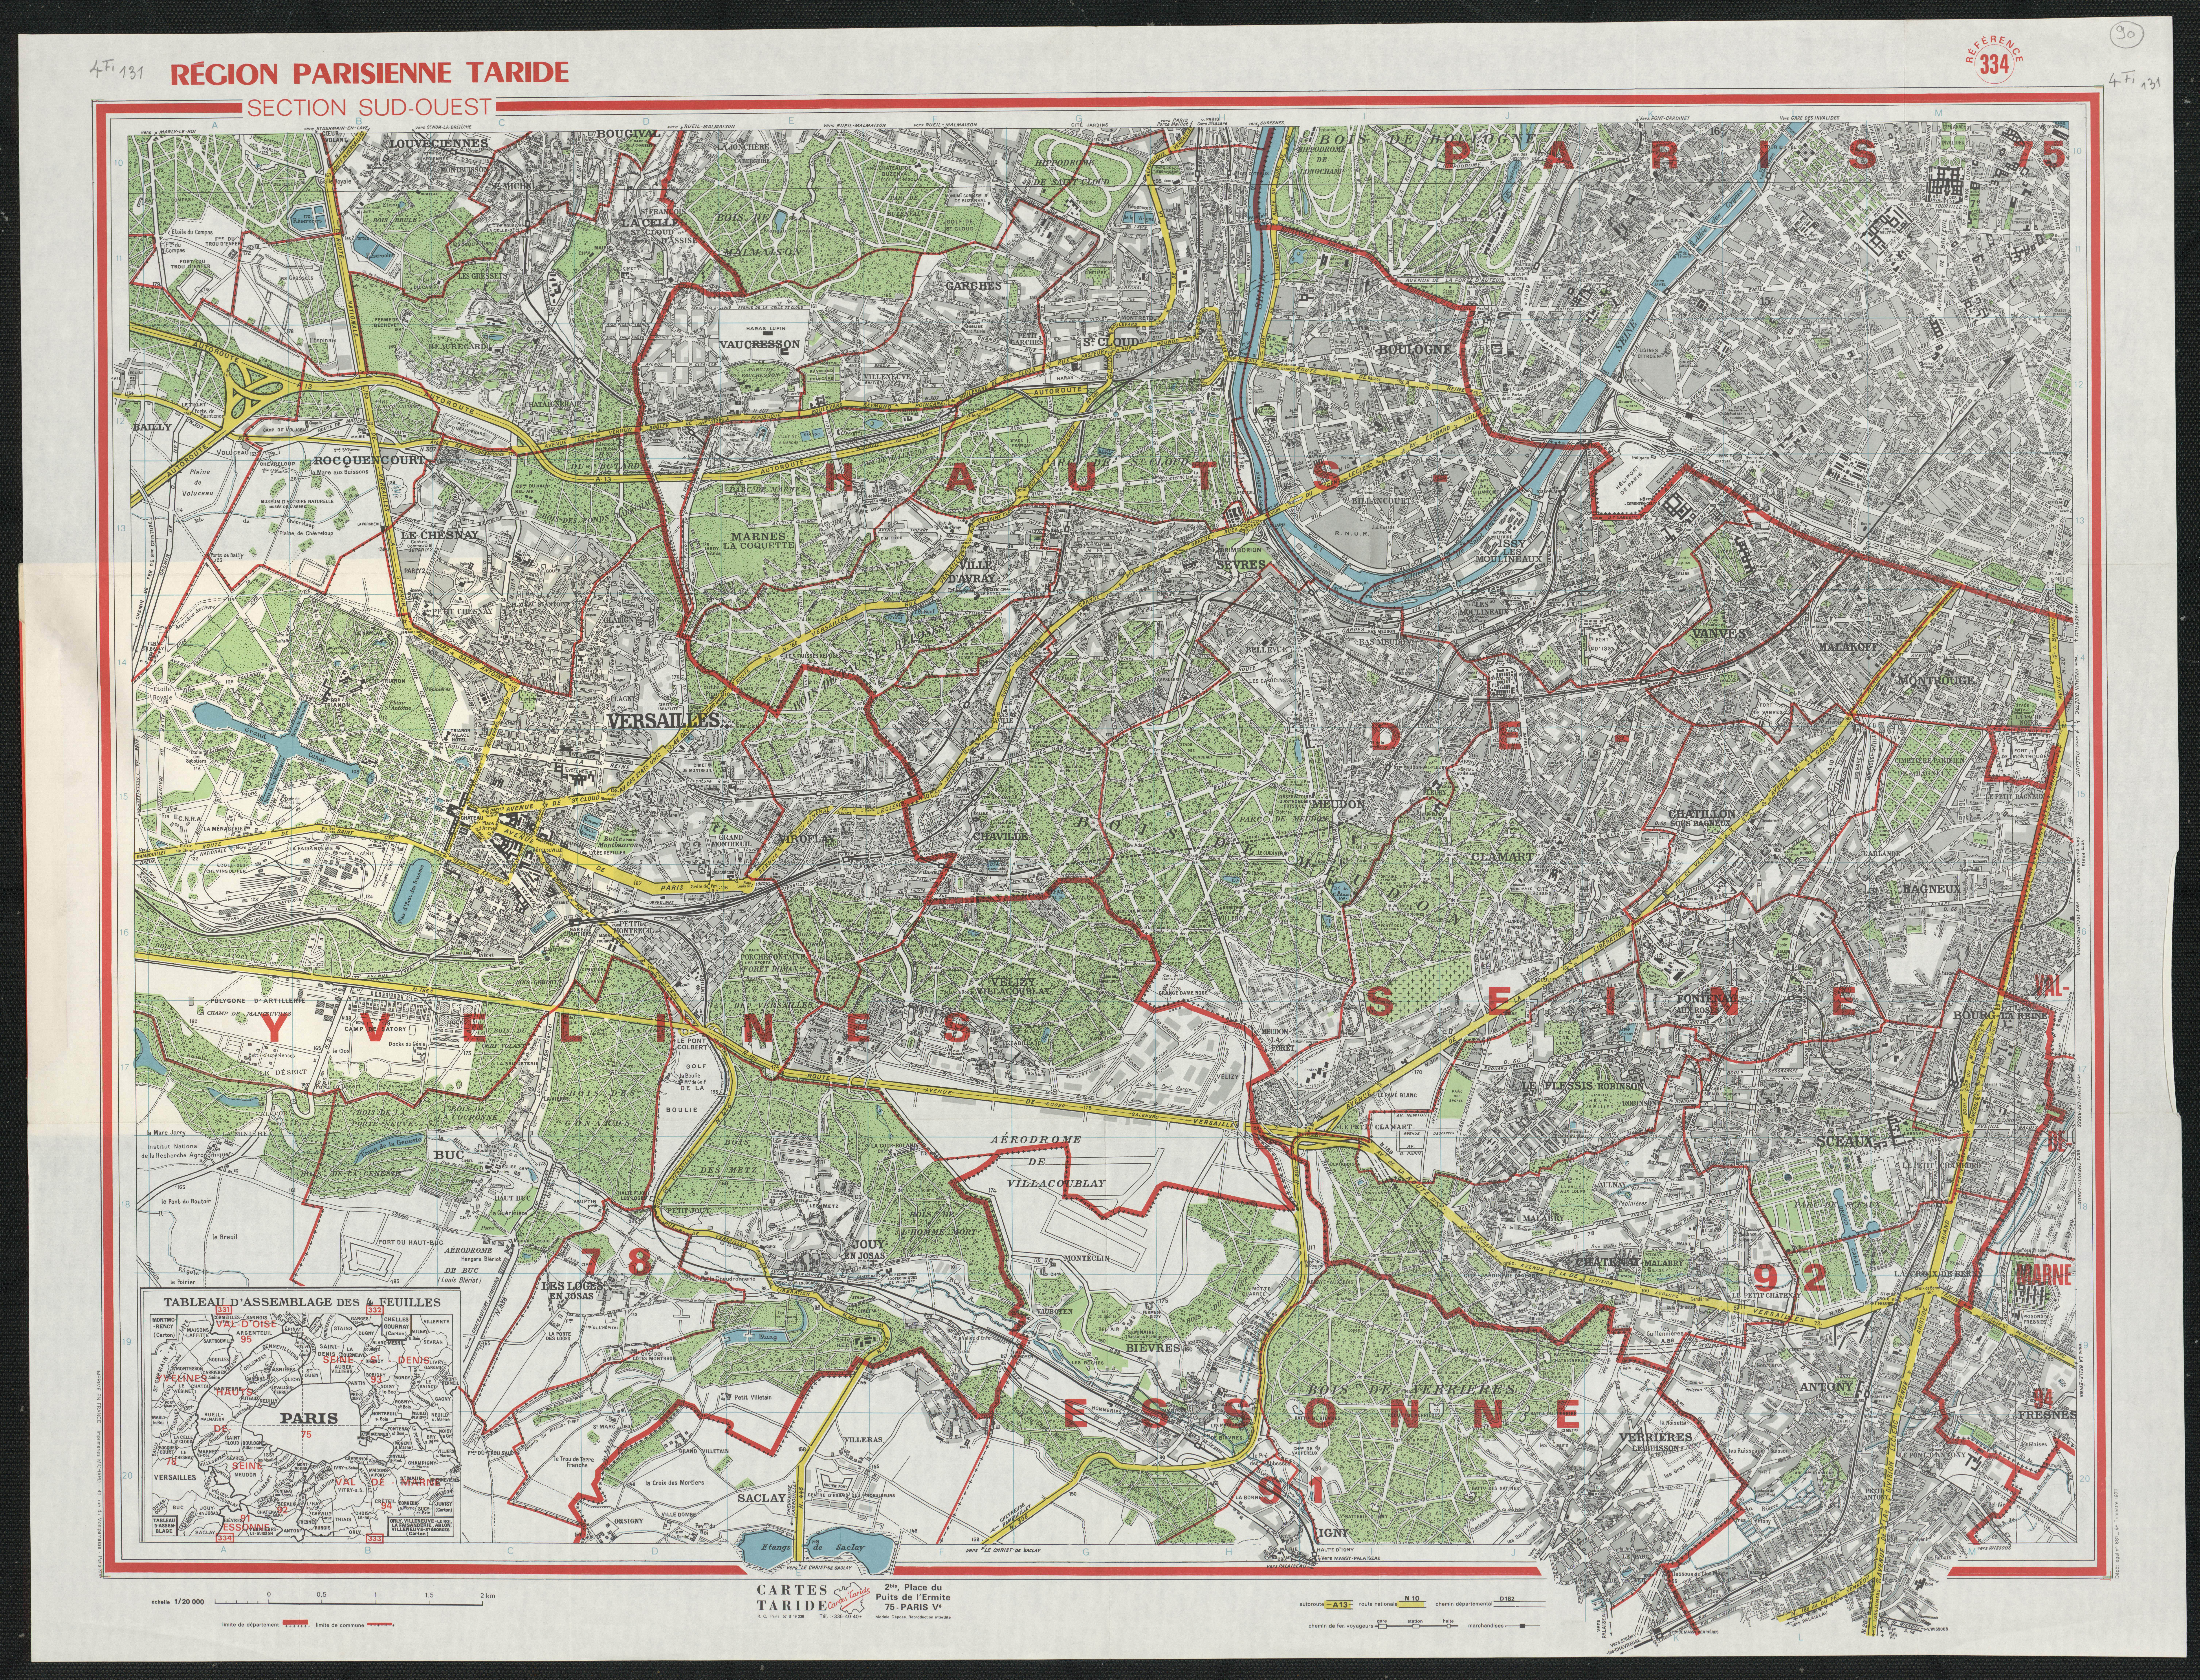 Région parisienne : section sud-ouest. 1972.